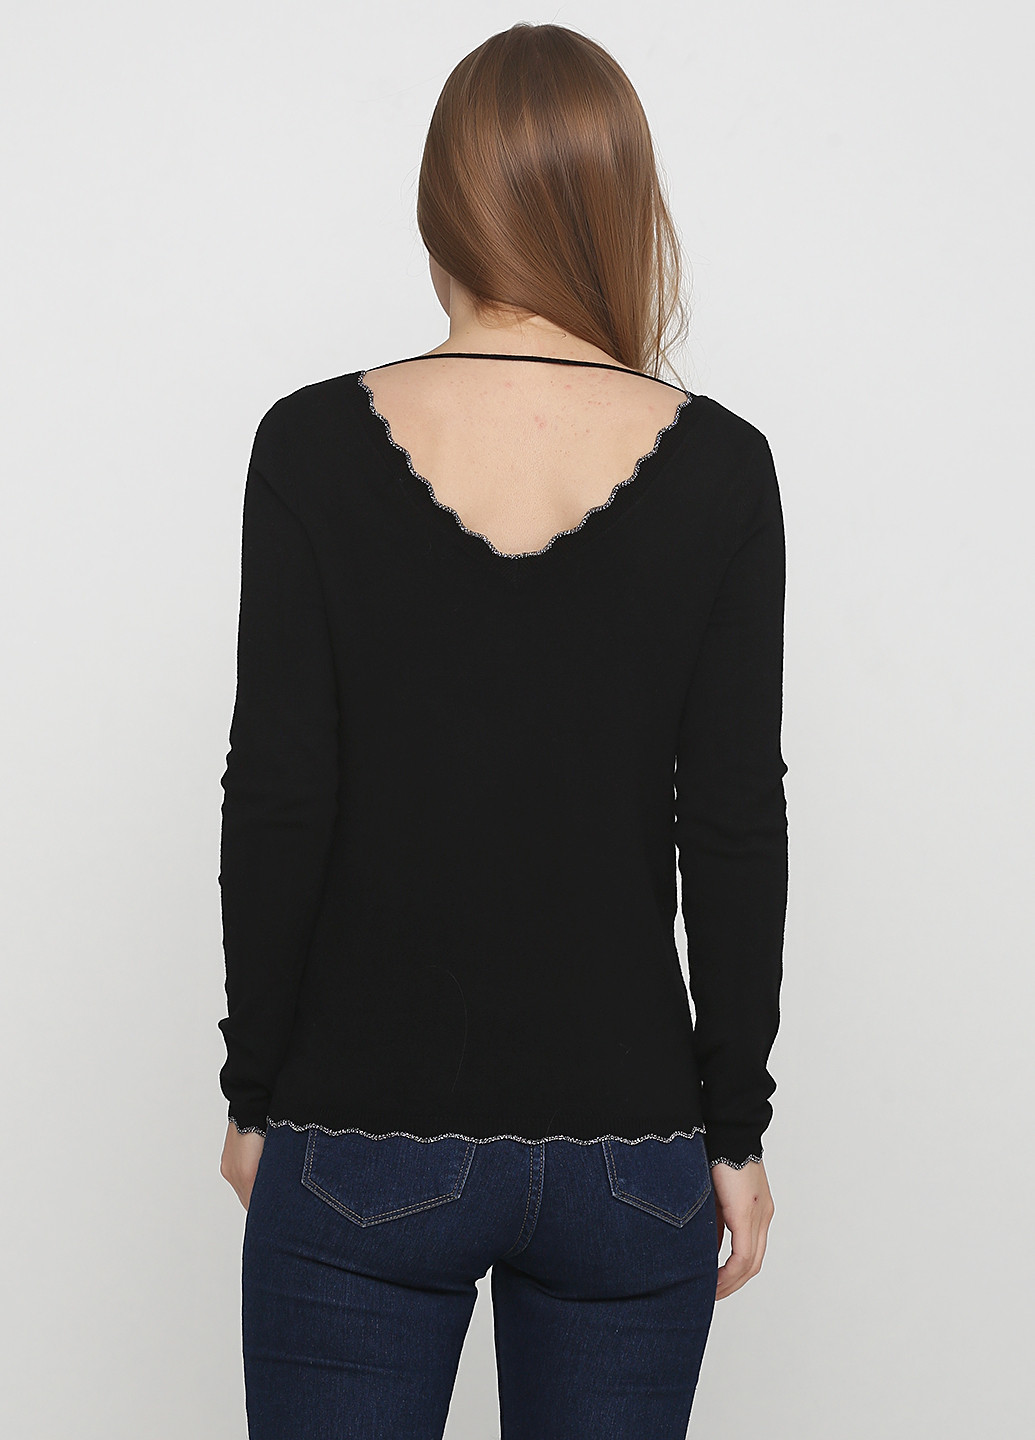 Черный демисезонный пуловер пуловер Vero Moda